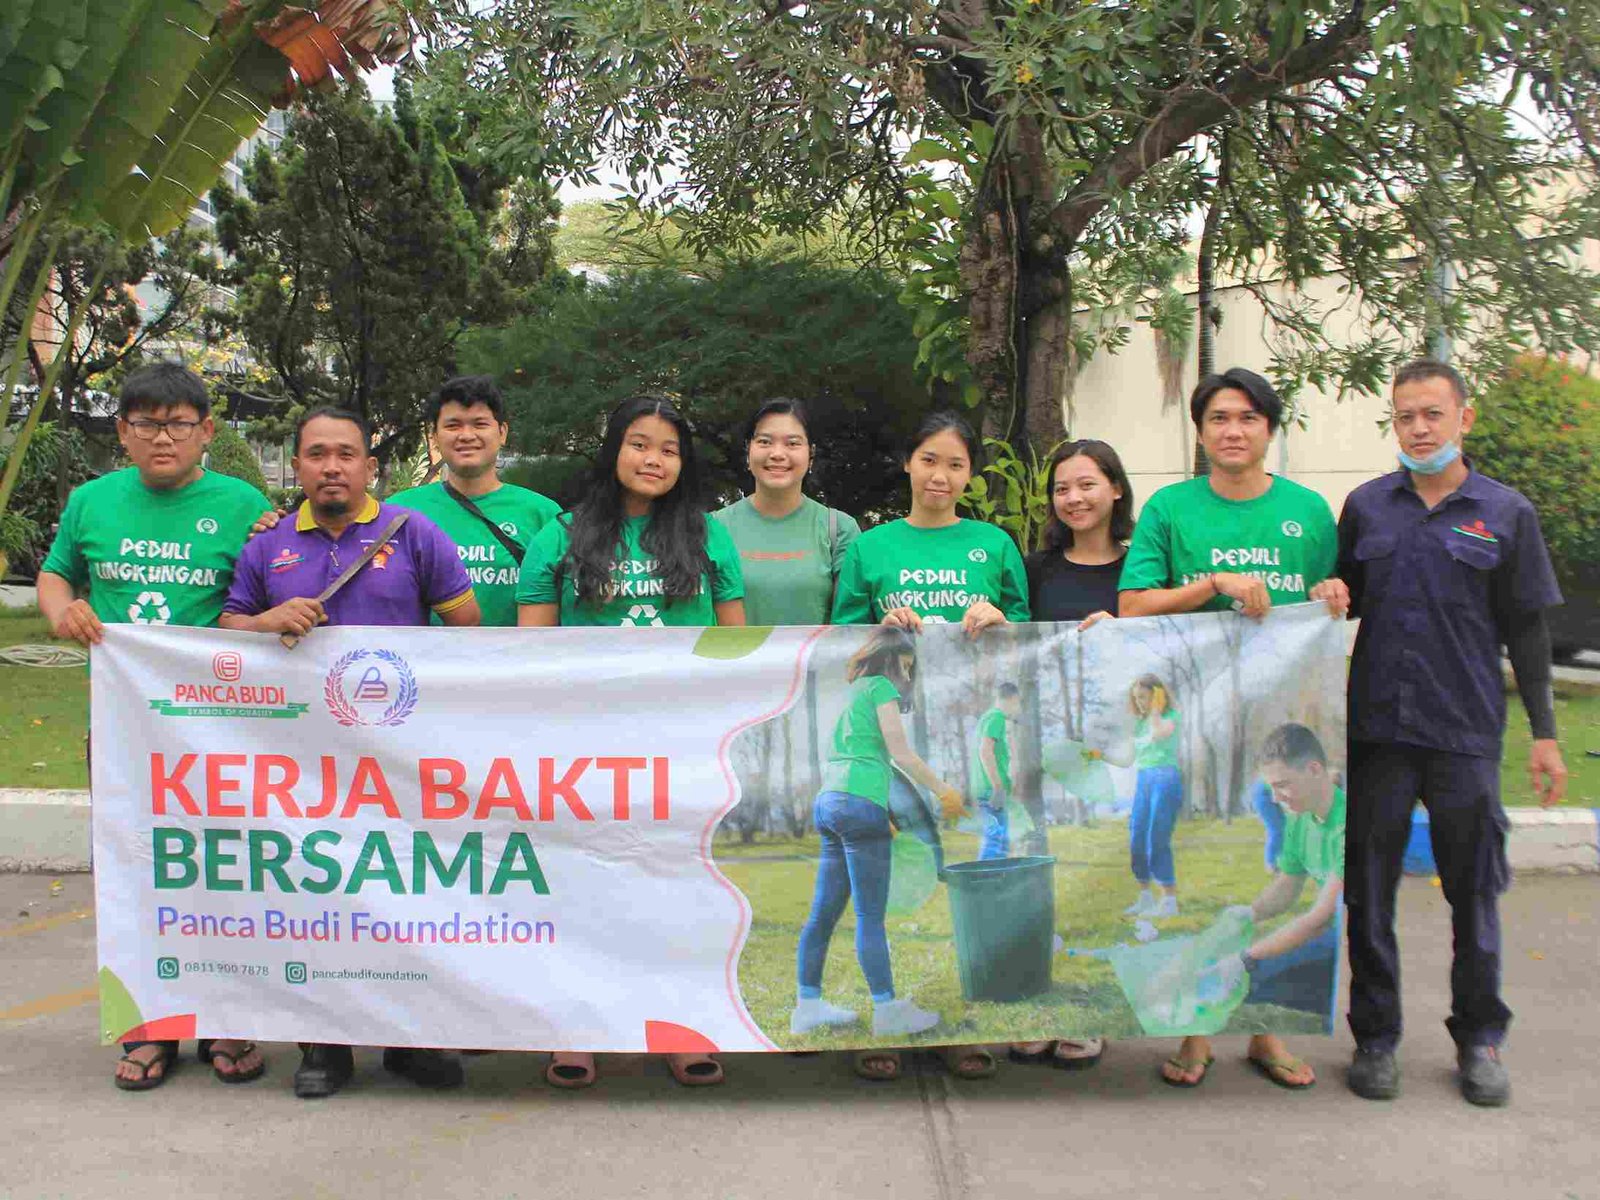 Kerja Bakti: Tanggung Jawab Sosial Perusahaan dalam Menjaga Lingkungan bersih